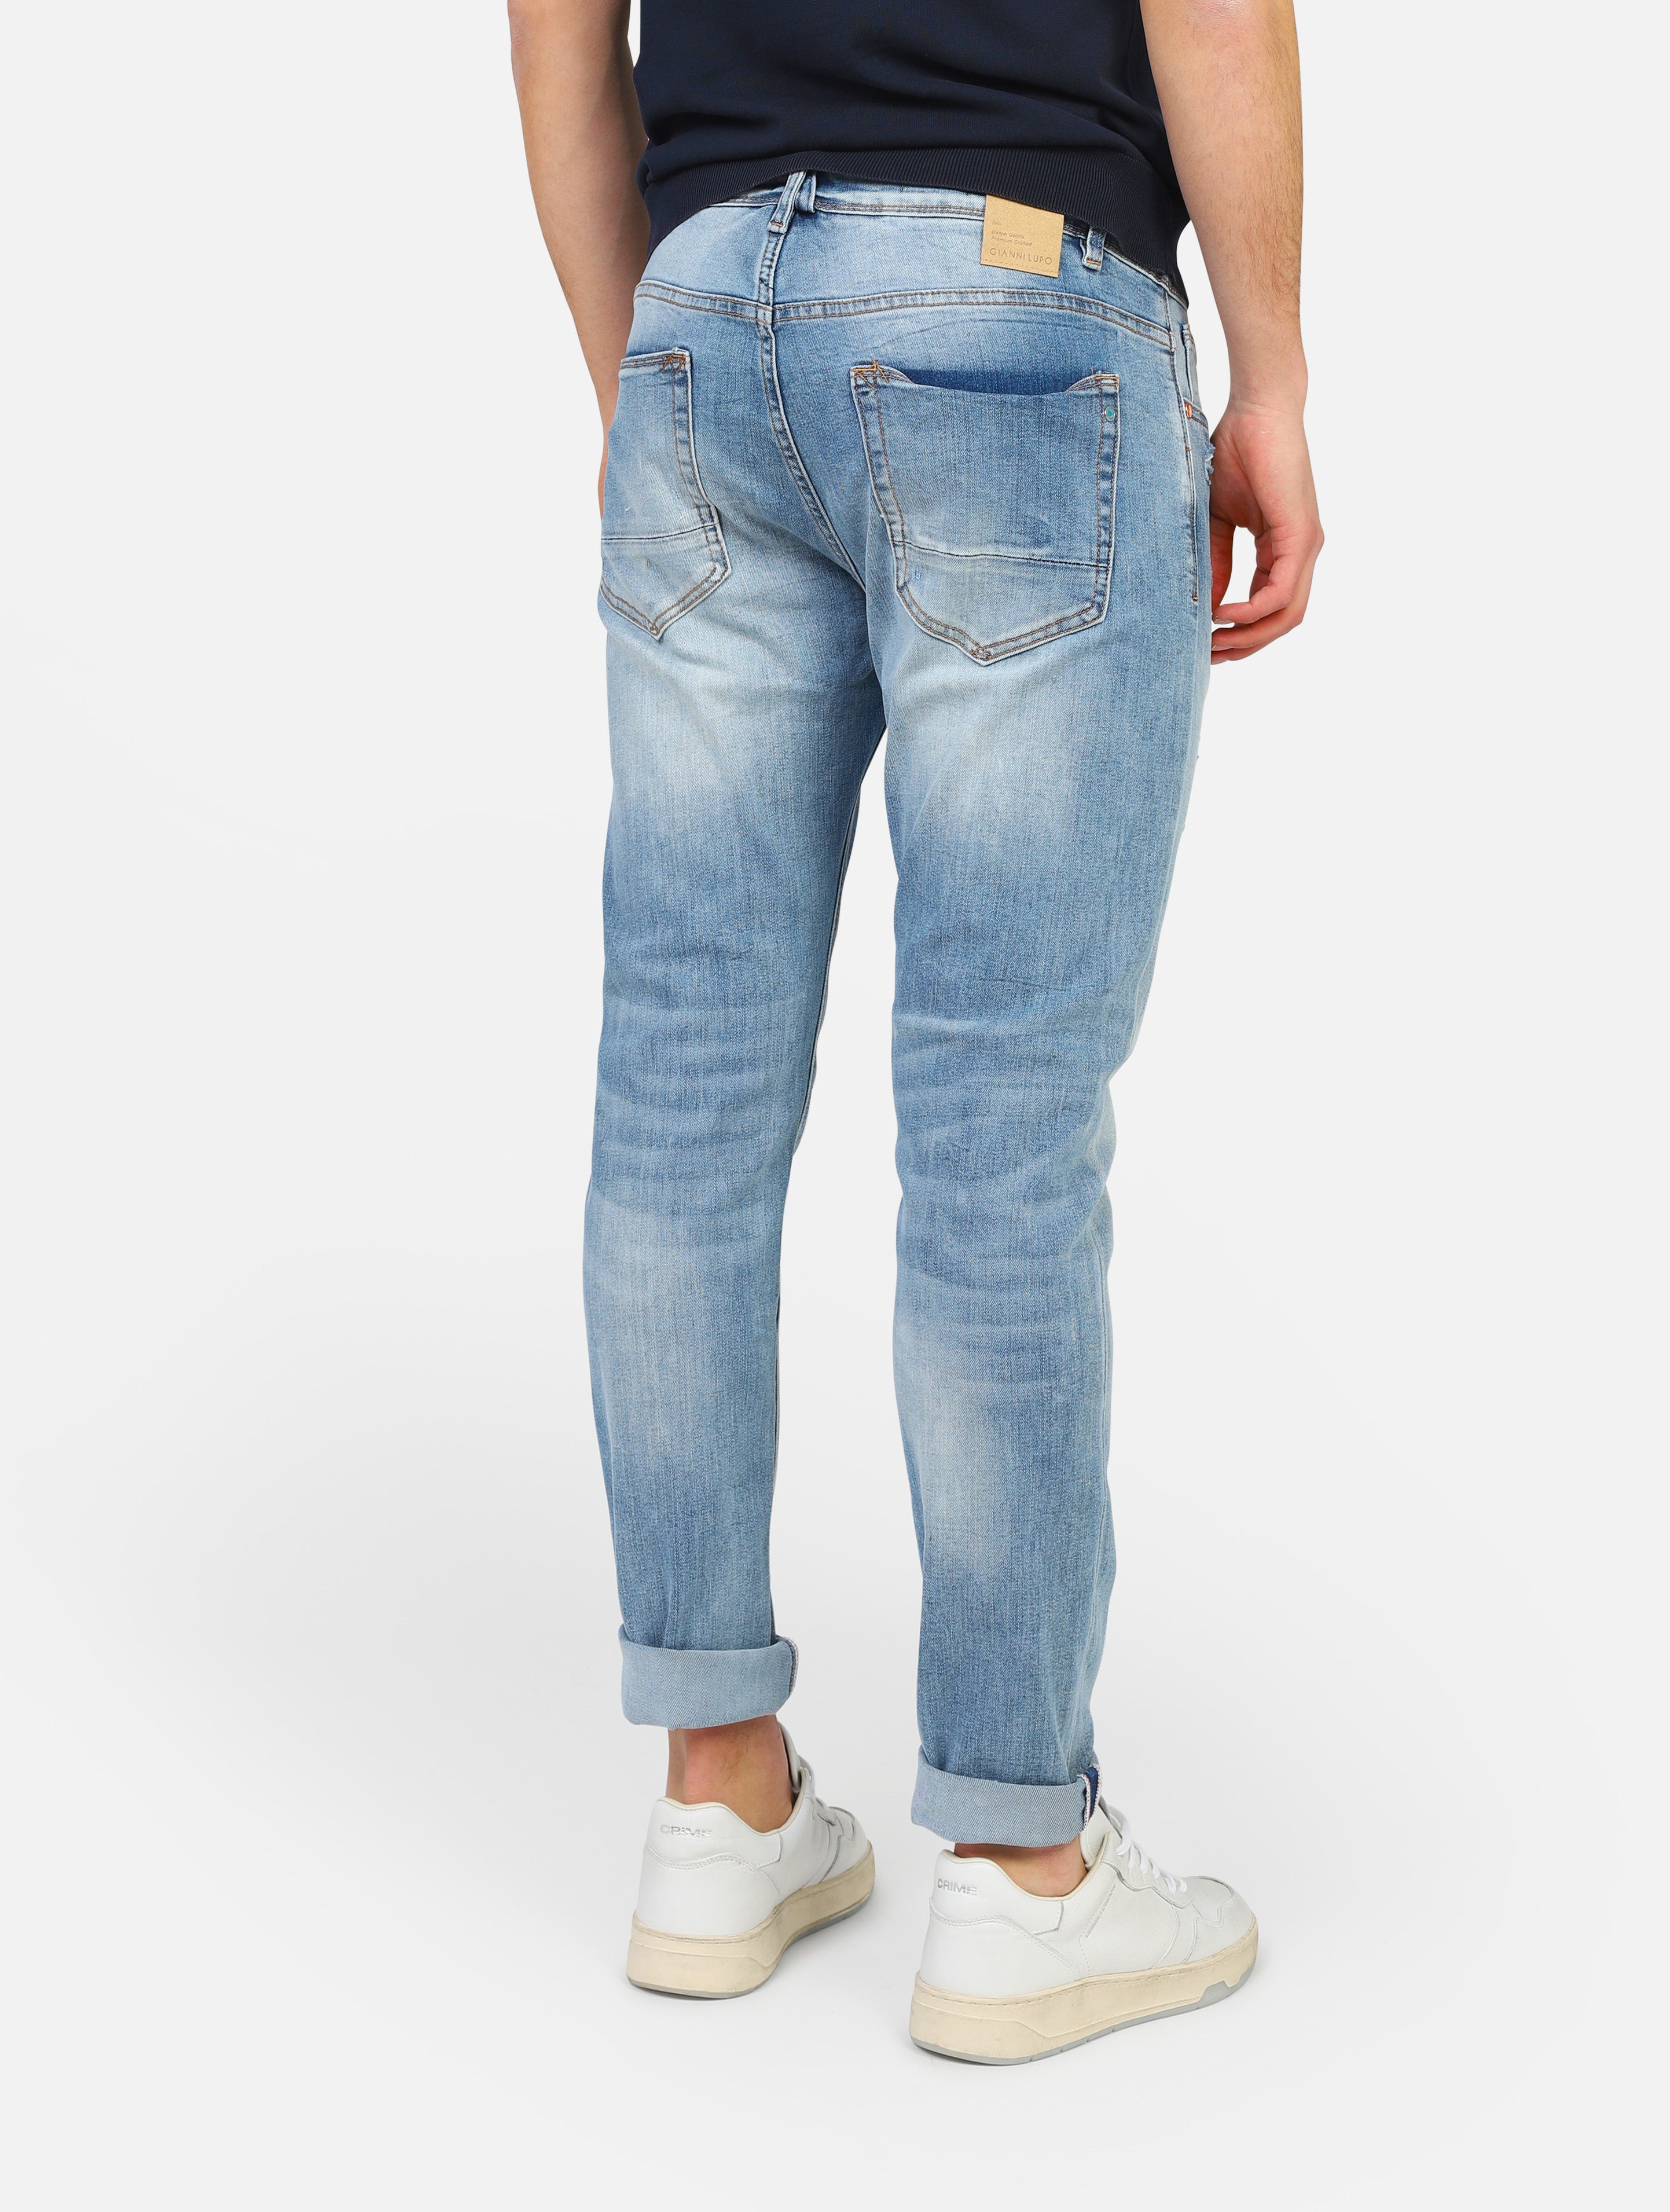 Jeans gianni lupoi -  denim man  - 3